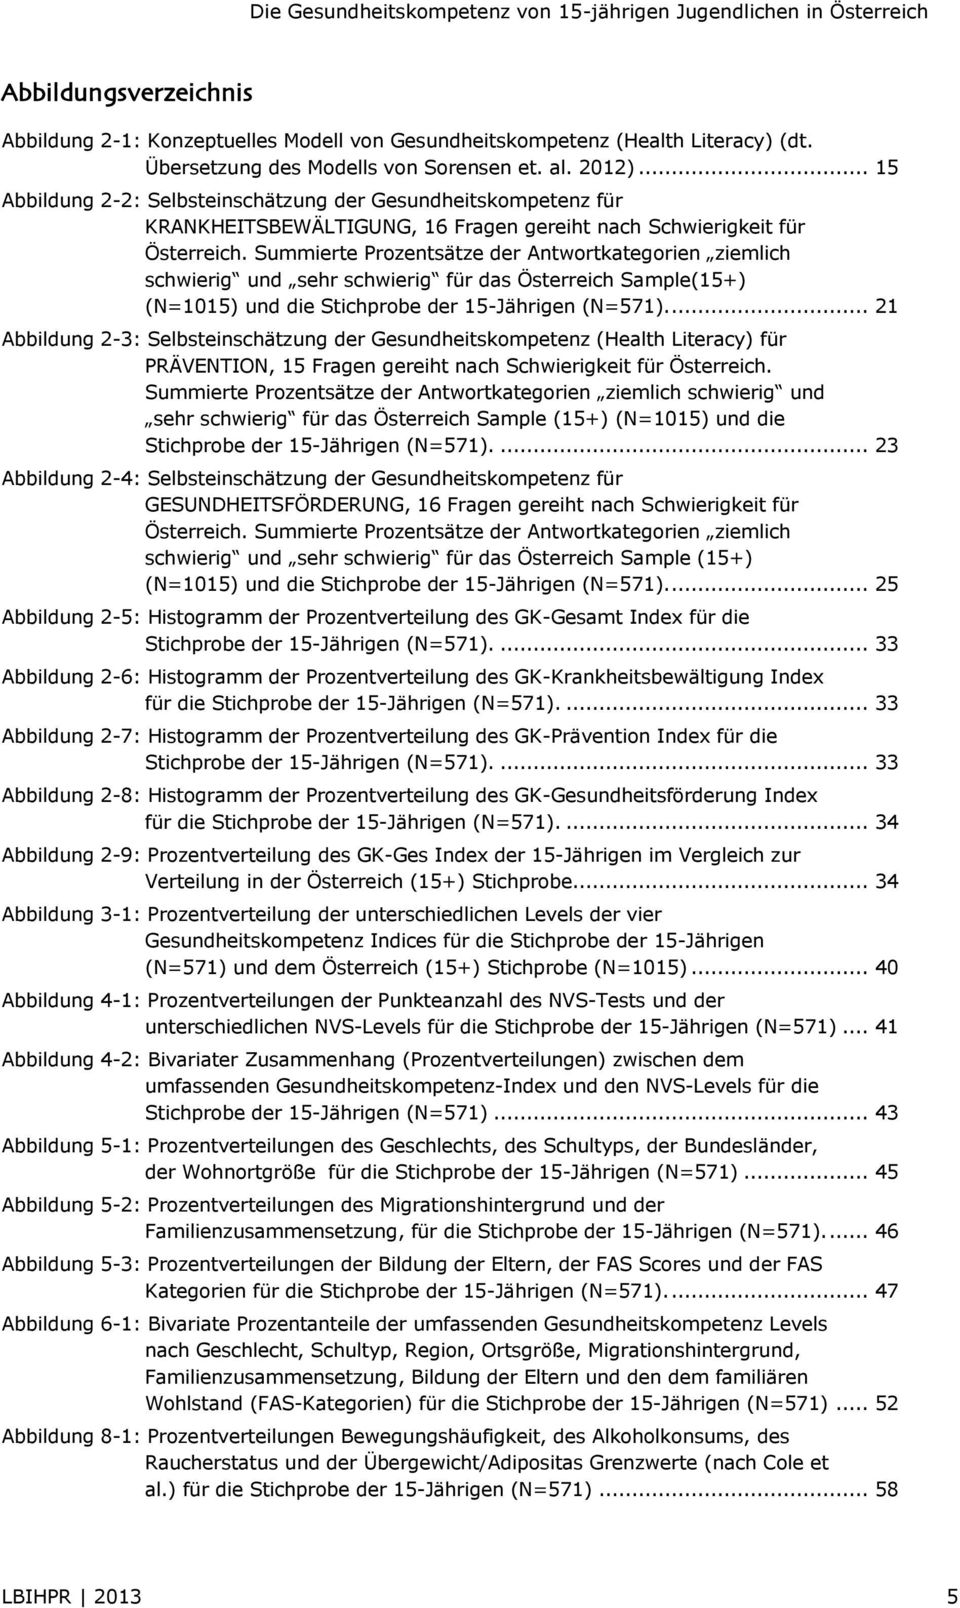 Summierte Prozentsätze der Antwortkategorien ziemlich schwierig und sehr schwierig für das Österreich Sample(15+) (N=1015) und die Stichprobe der 15-Jährigen (N=571).